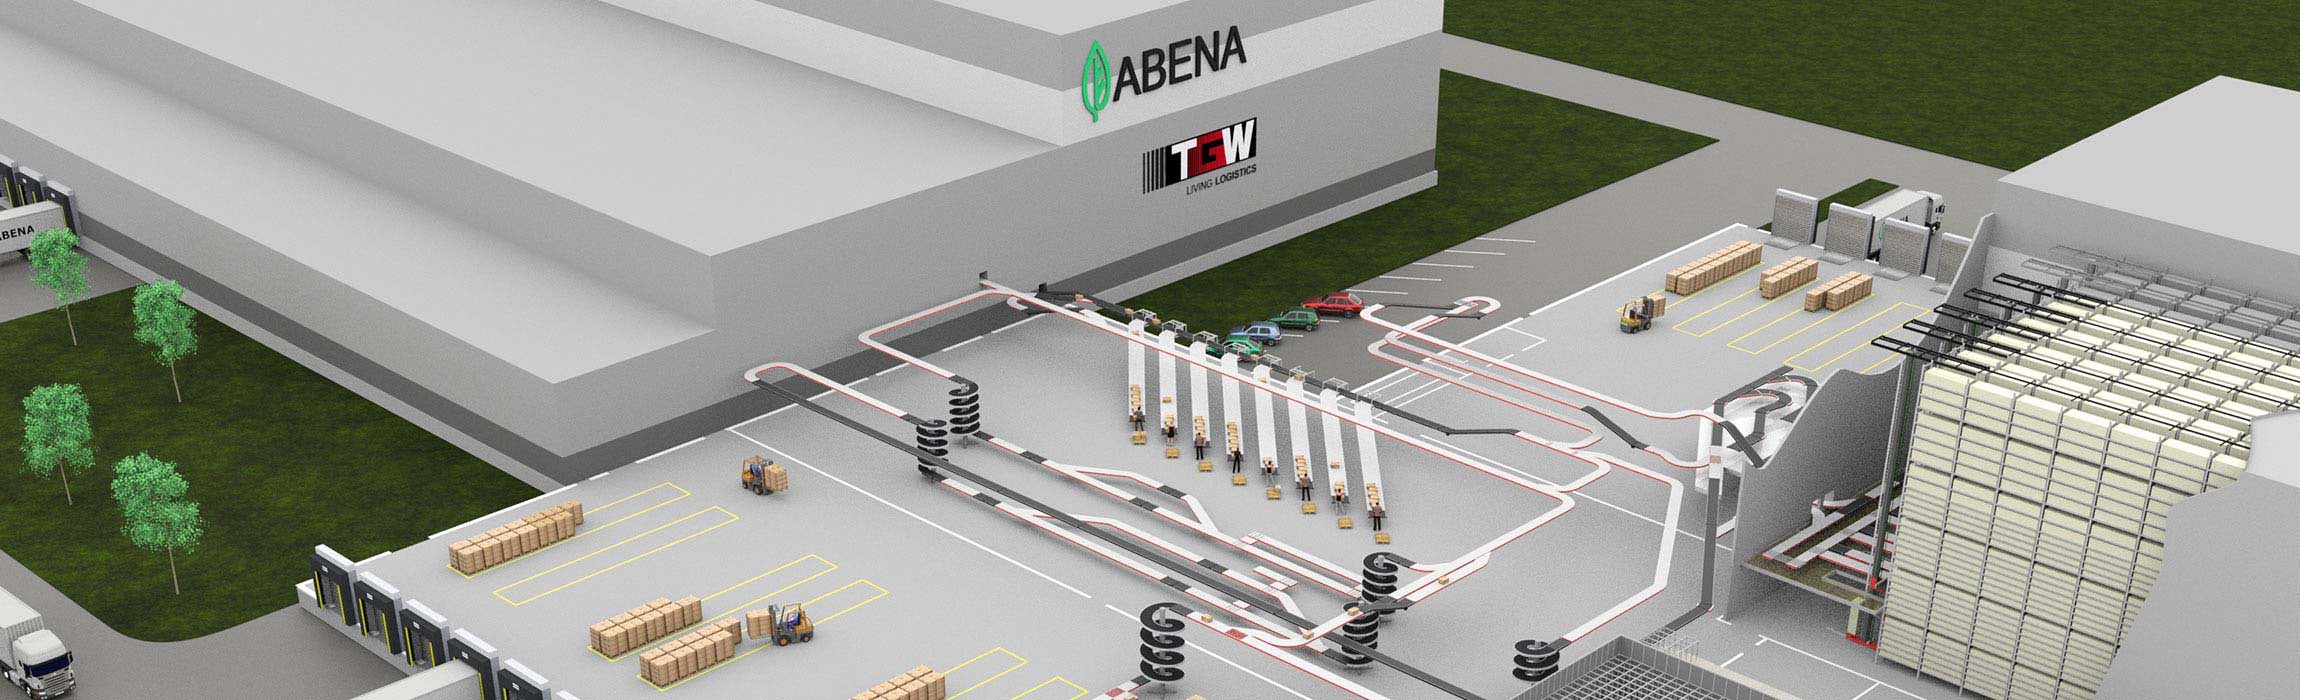 Abena setzt bei der Erweiterung seines Logistikzentrums auf TGW-Know-how: